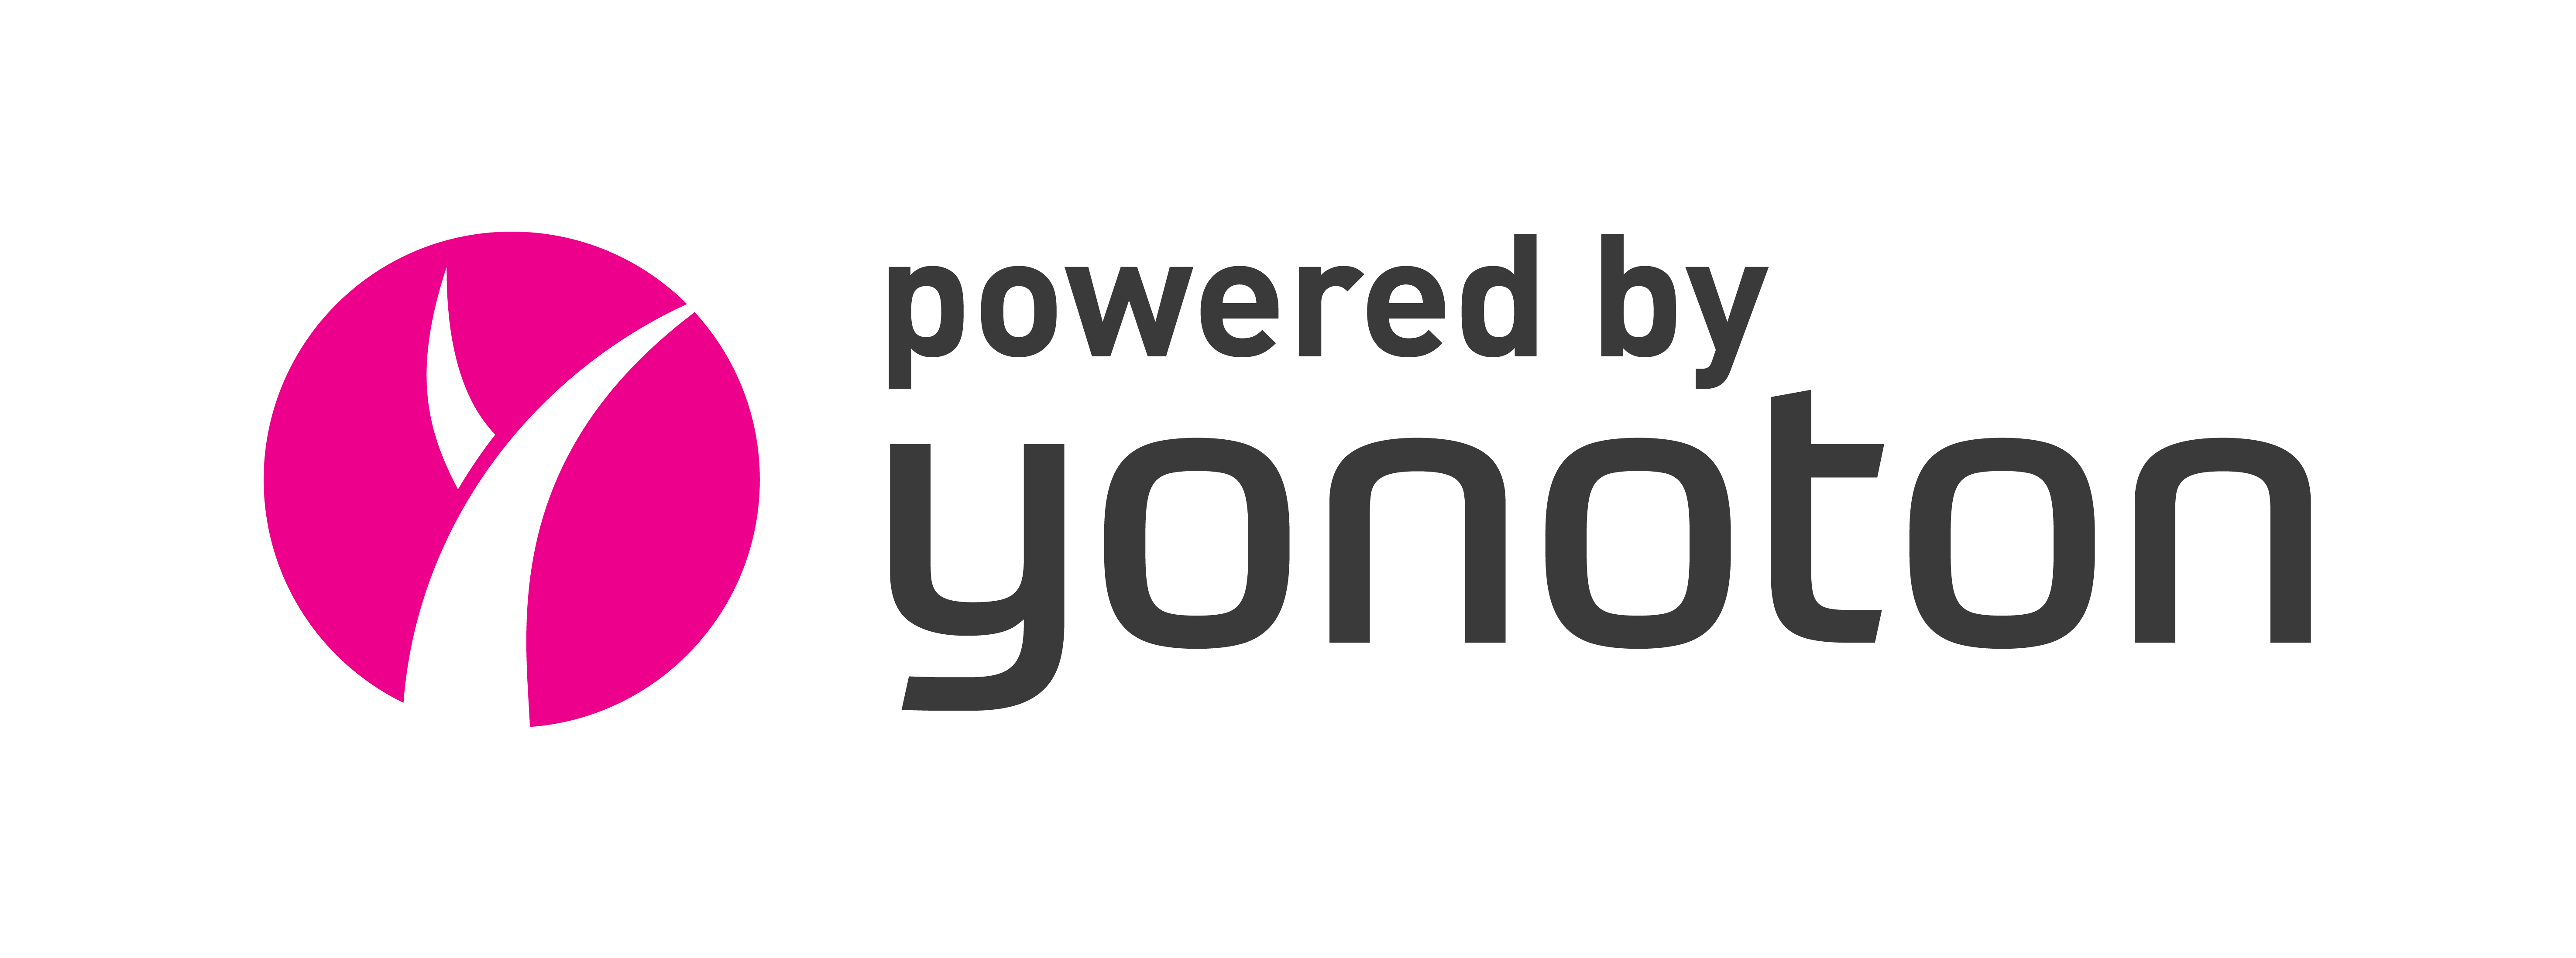 Yonoton logo